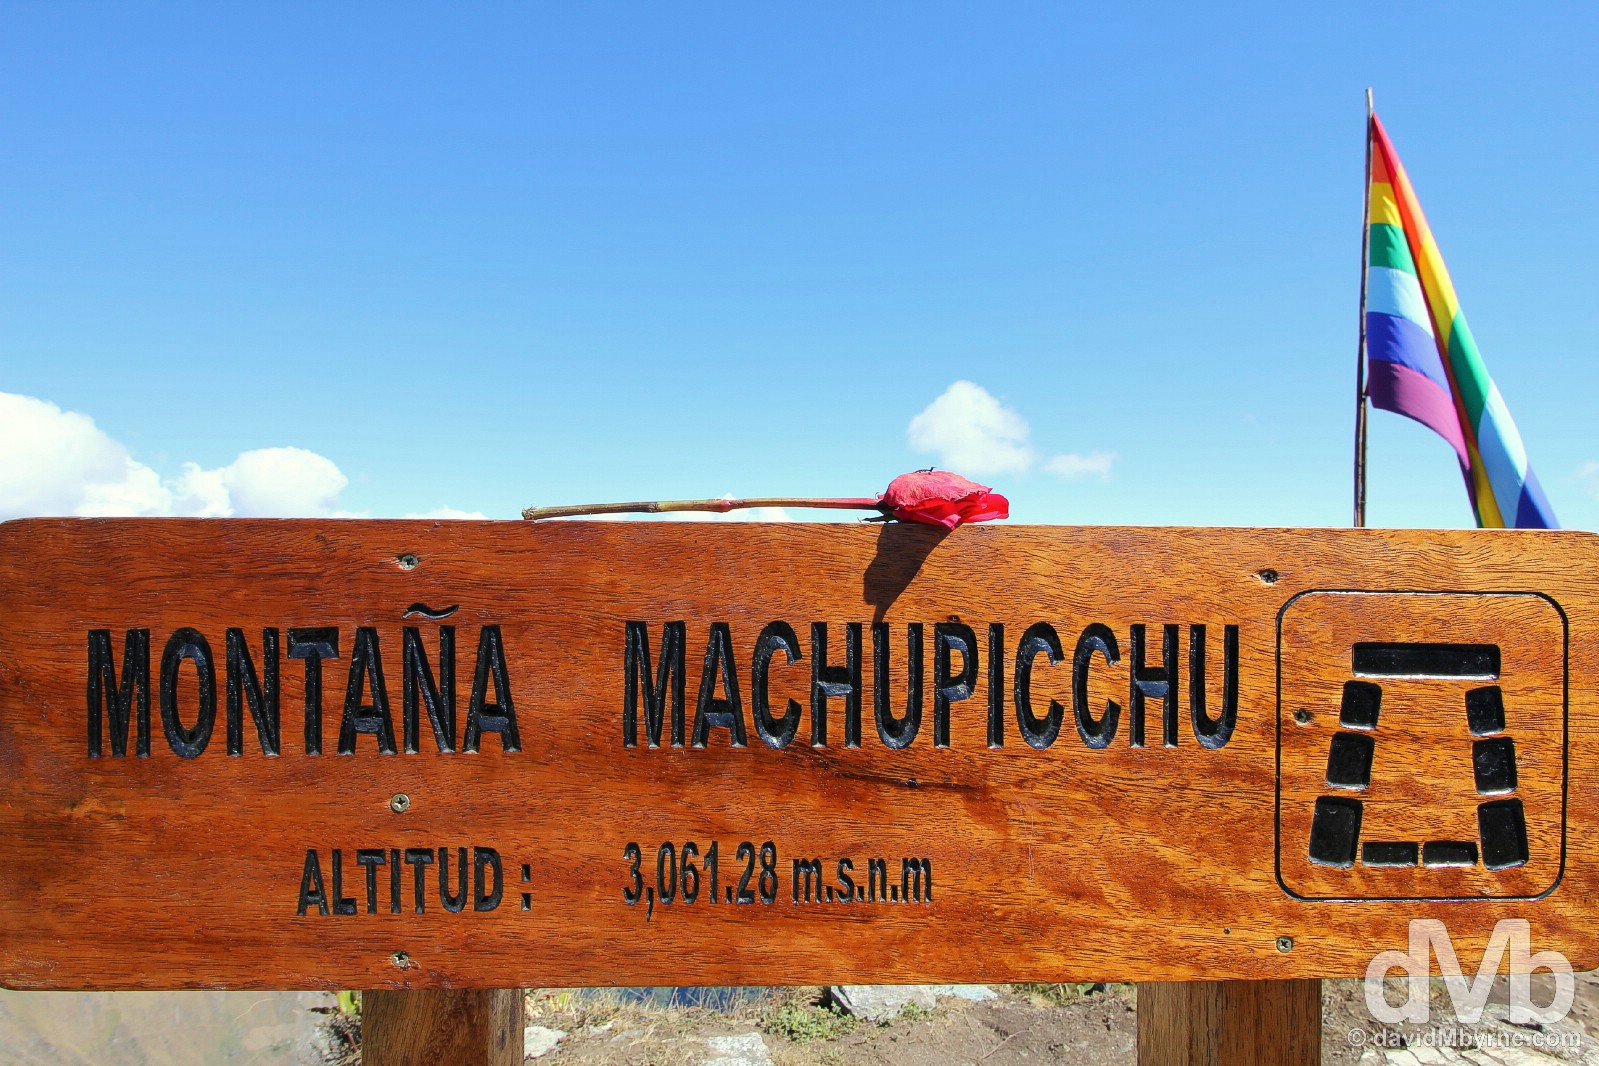 At the summit of Montana Machupicchu. Machu Picchu, Peru. August 15, 2015. 